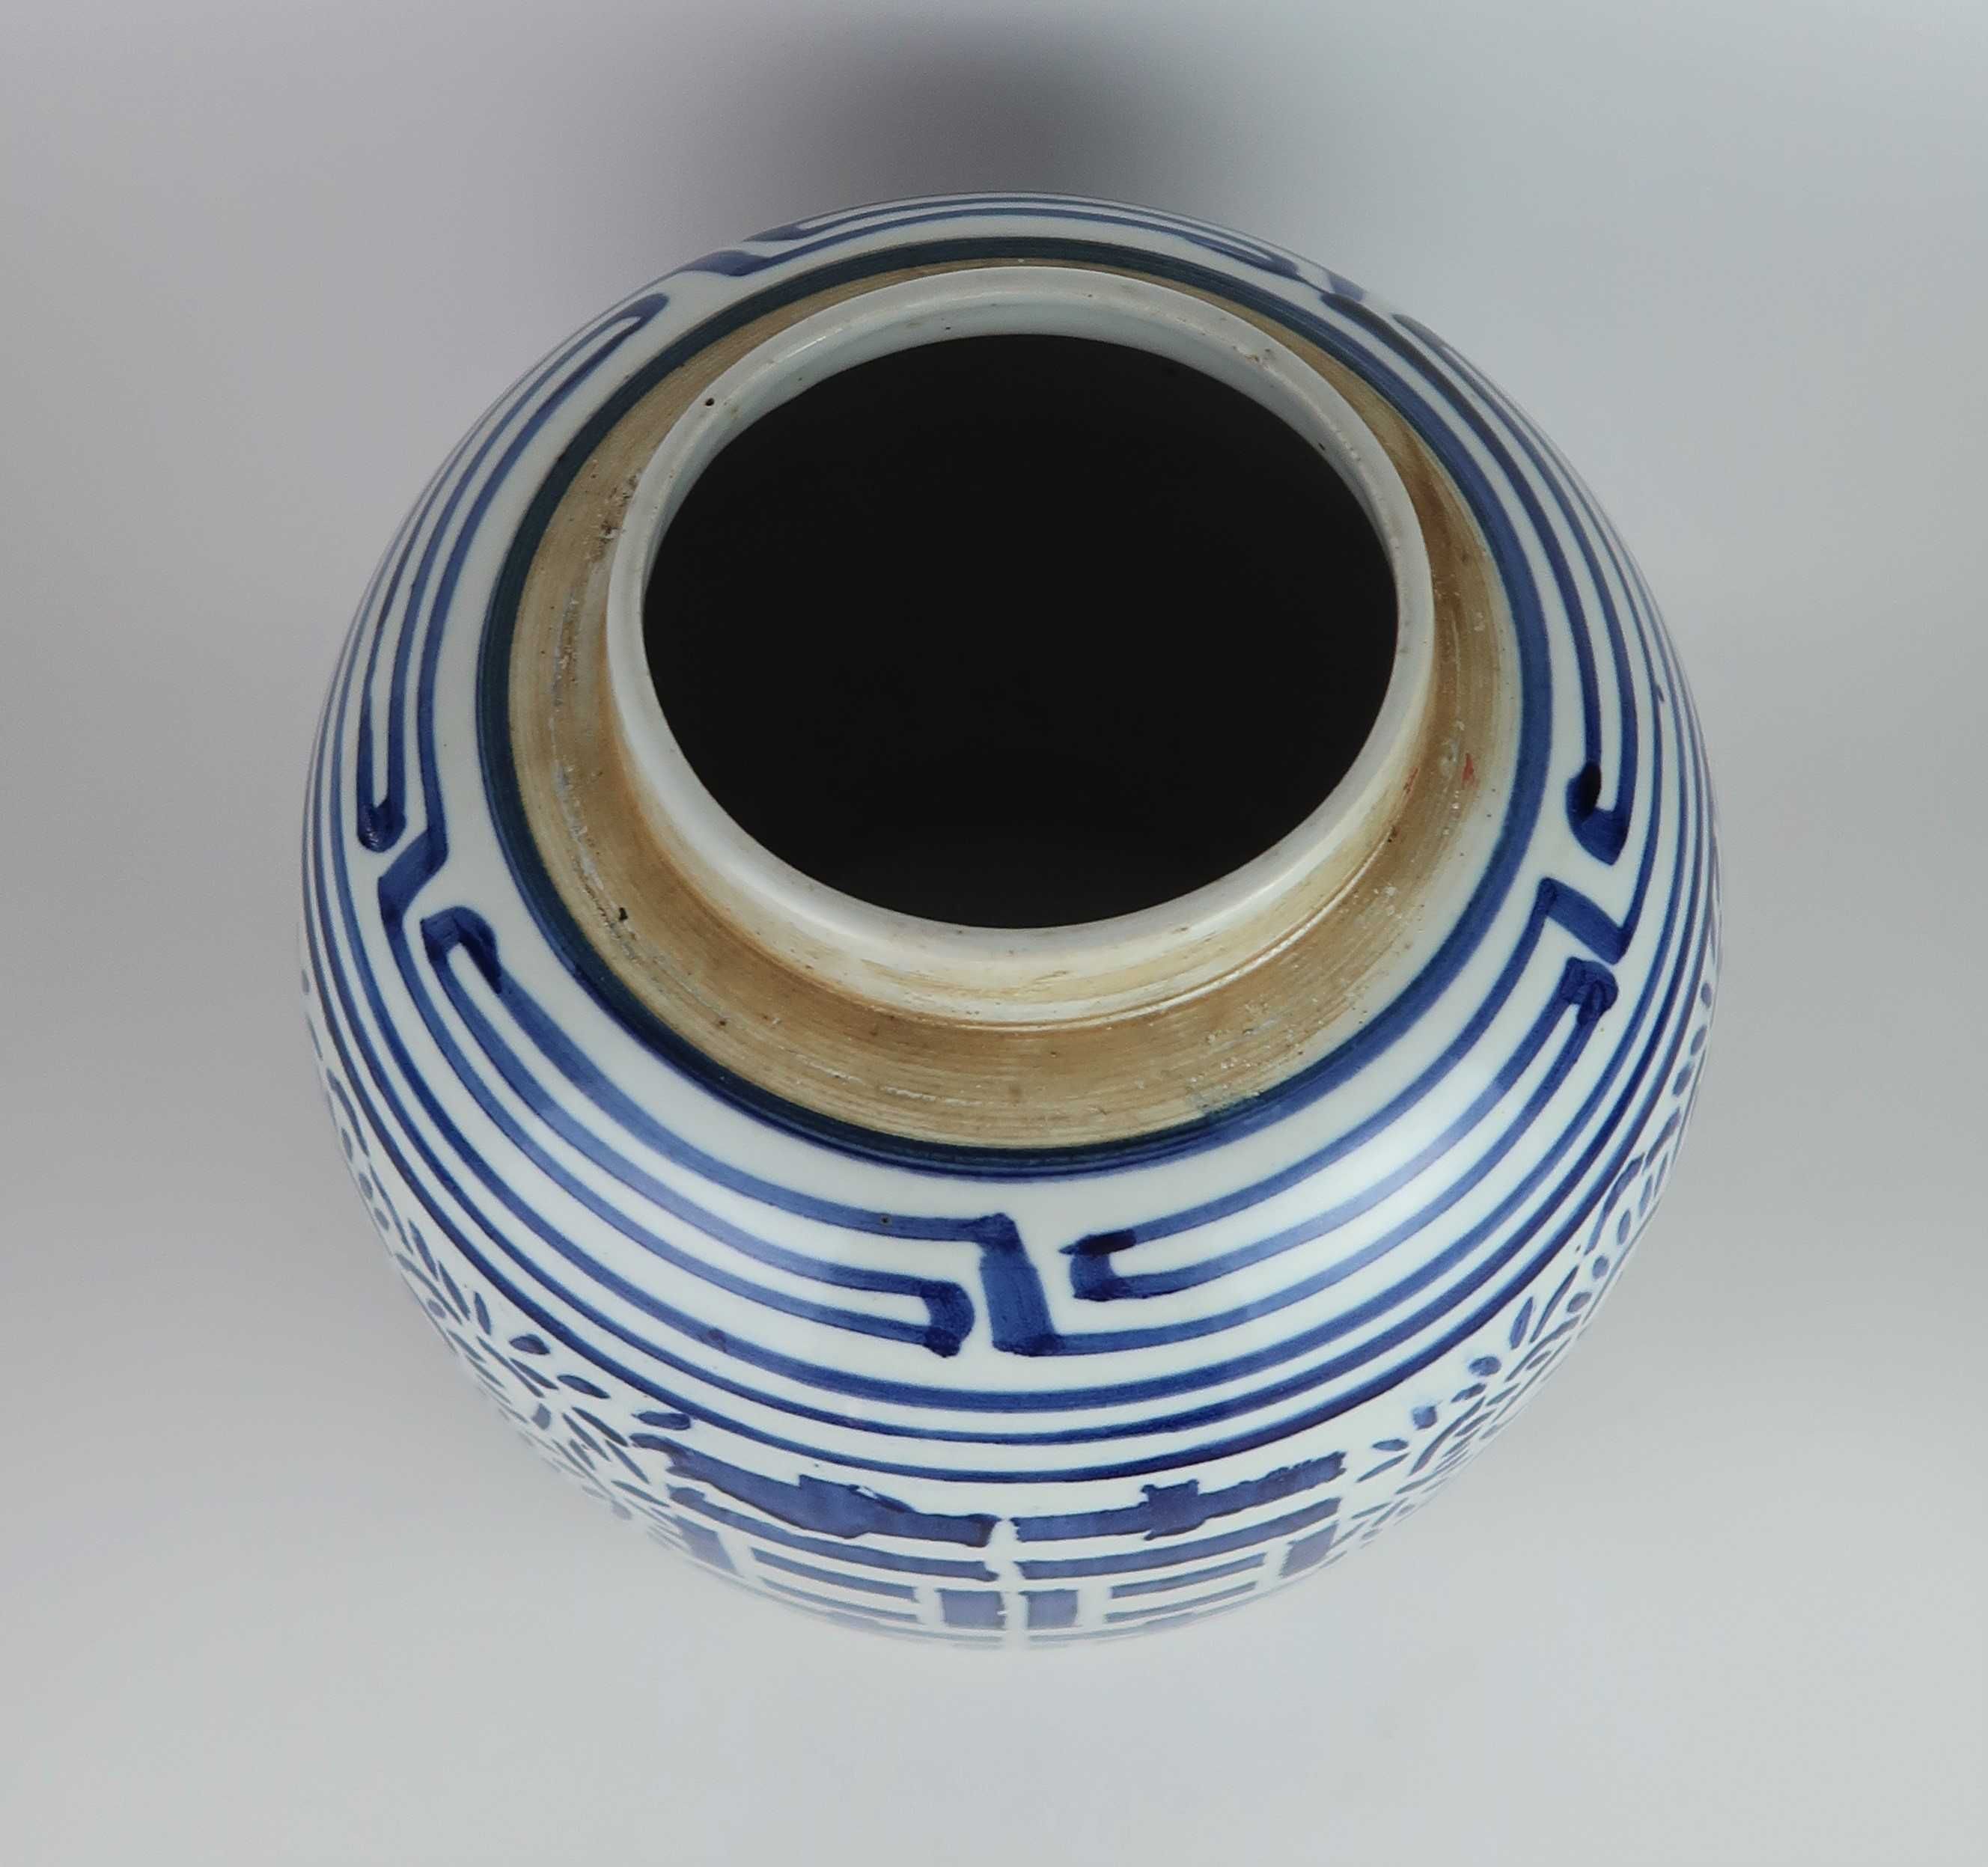 Pote de Gengibre " double happiness " Porcelana Azul e Branca da China